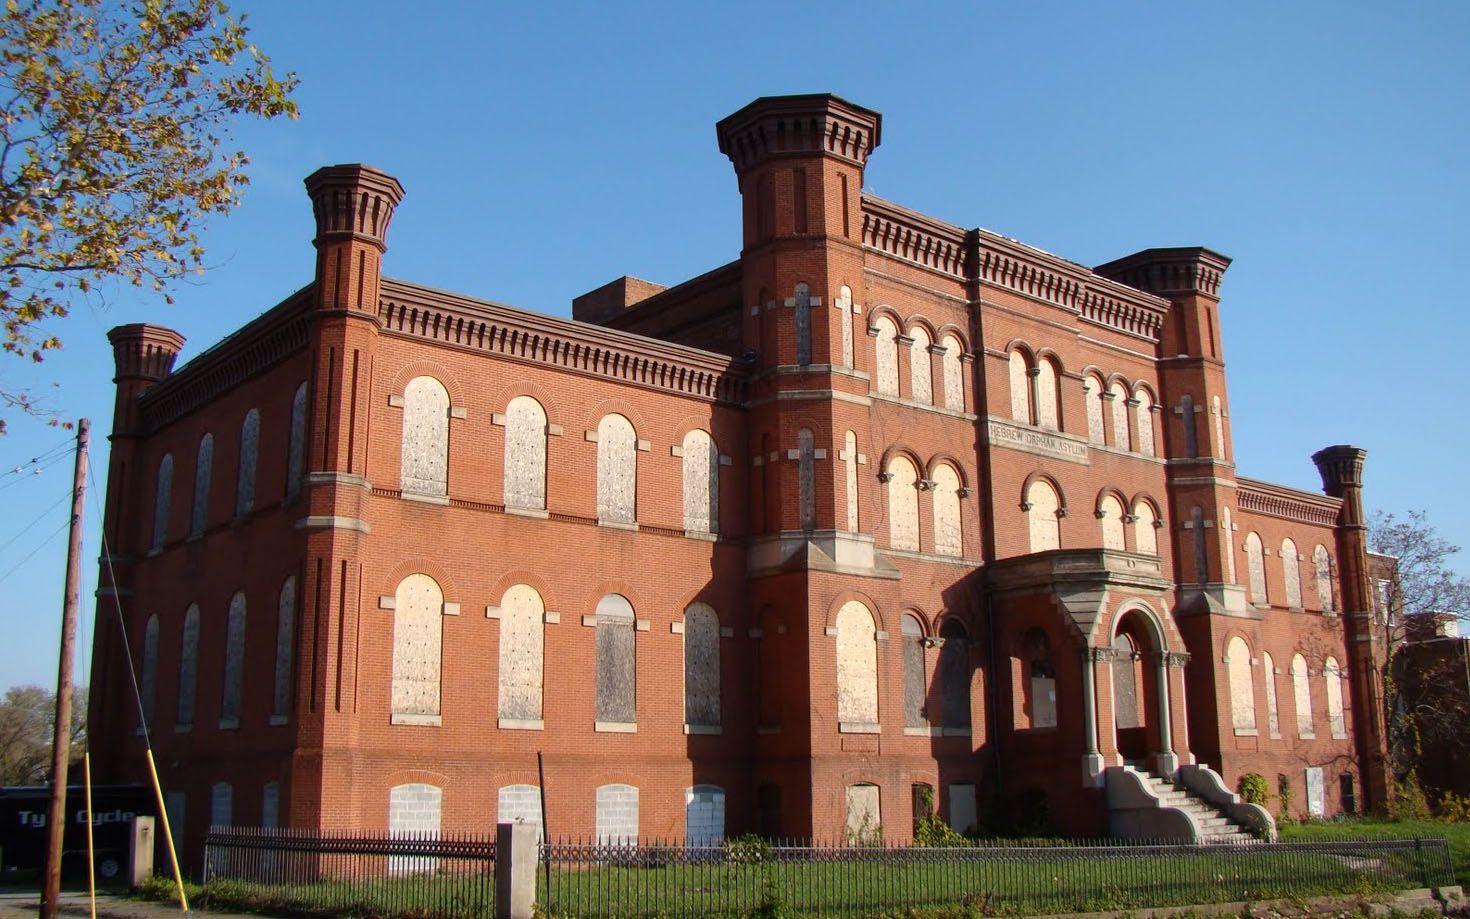 Brick Hill (Baltimore, Maryland) - Wikipedia